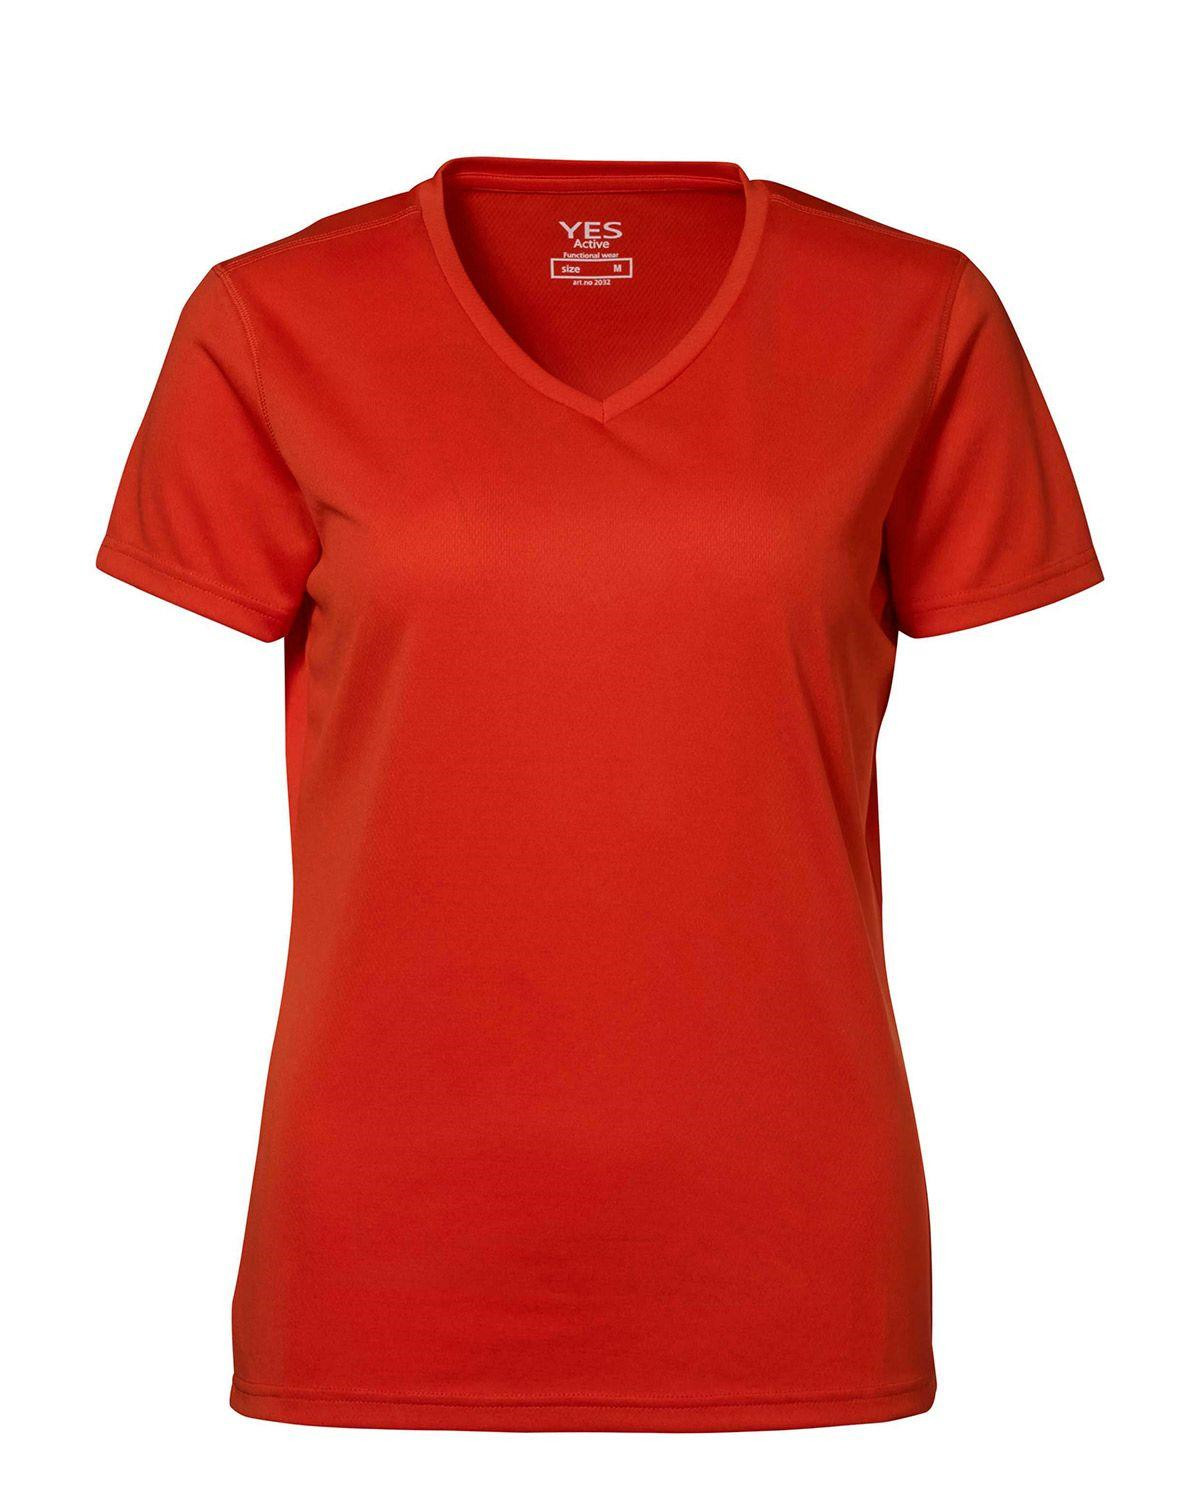 Billede af ID YES Svedtransporterende T-shirt til Kvinder (Orange, S) hos Army Star